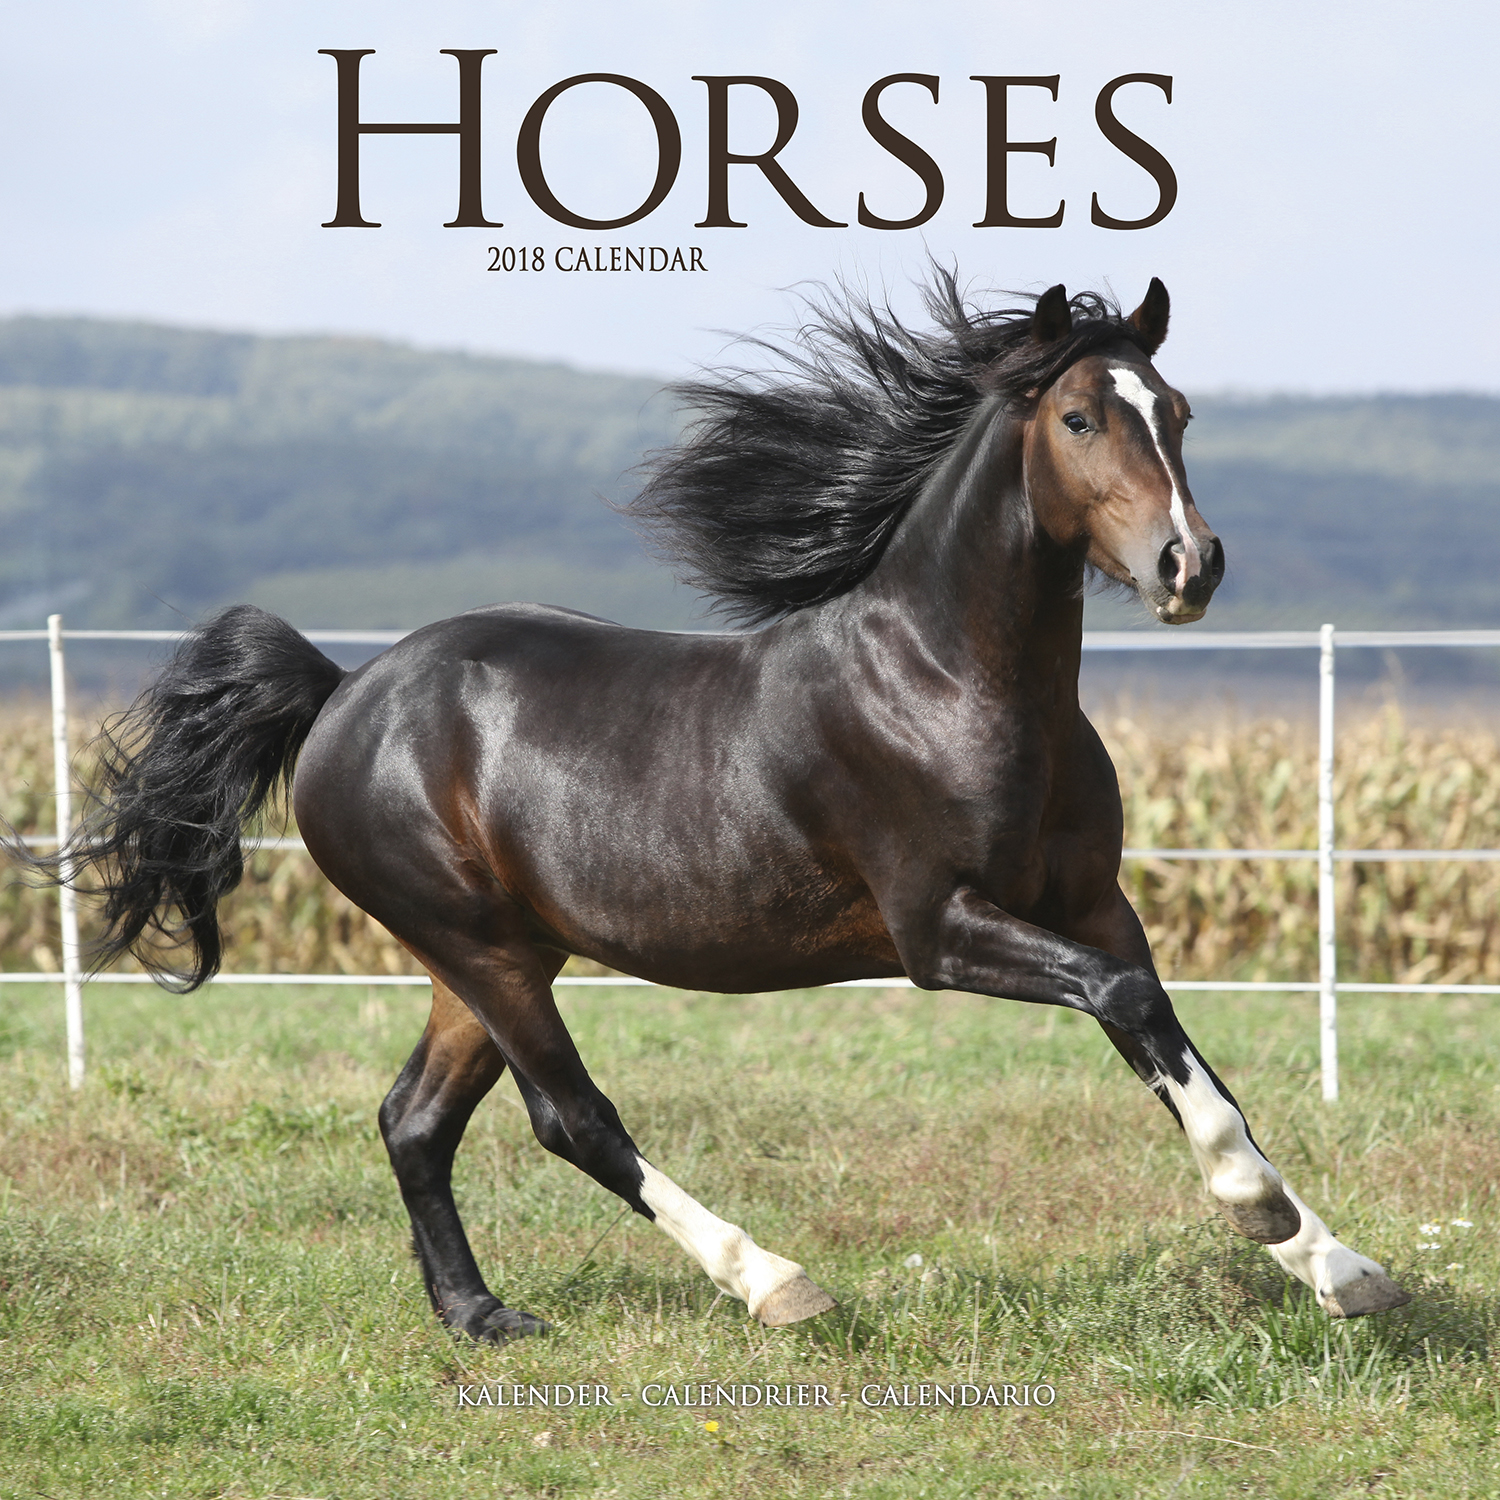 Horses Calendar 2018 3012218 Horses Animals